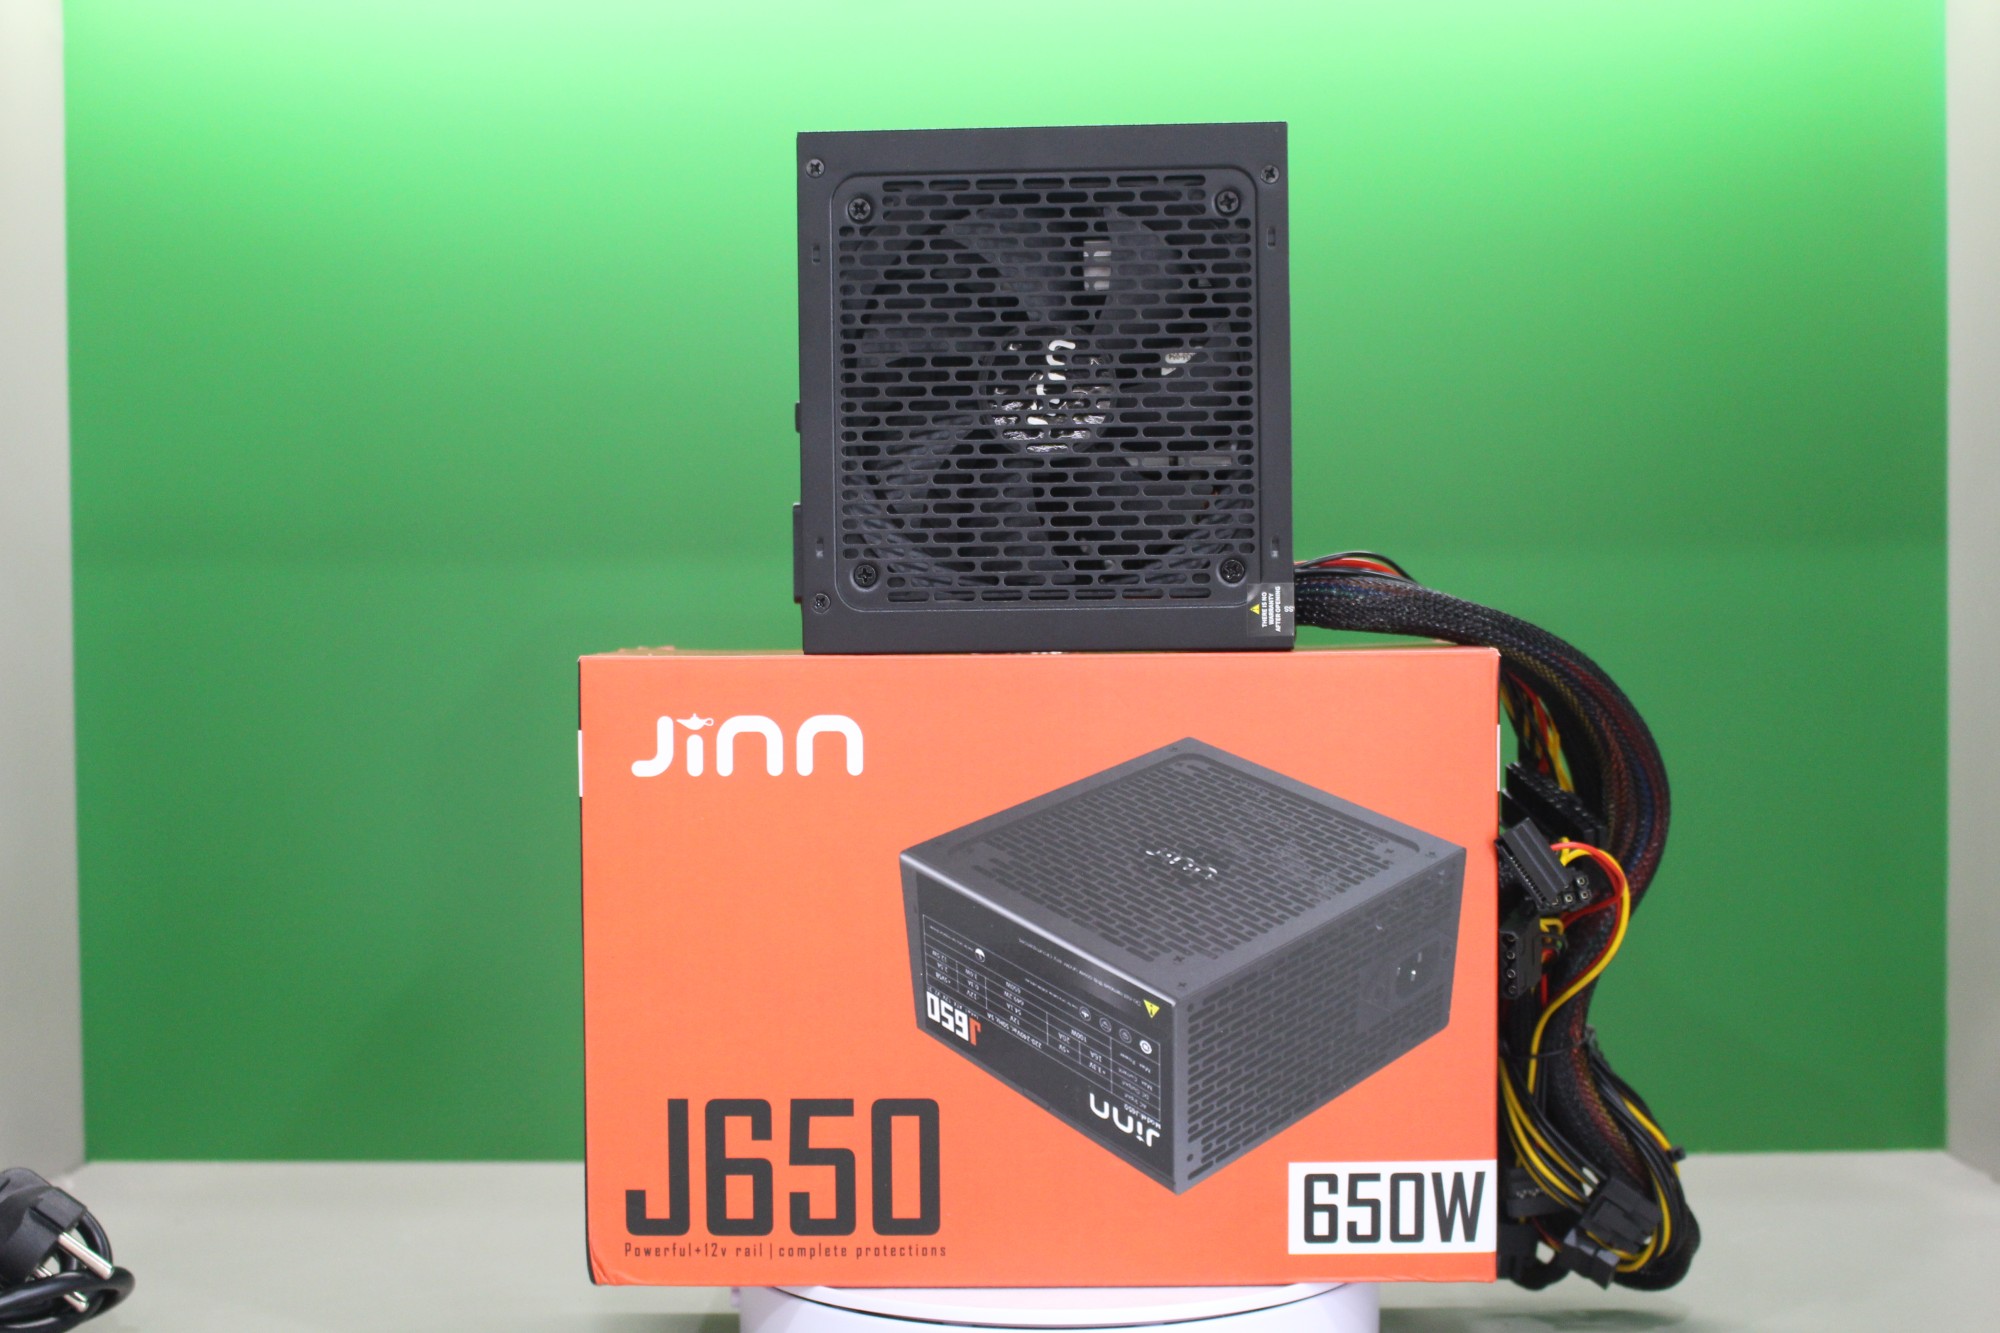 Nguồn Jinn J650 650W ATX